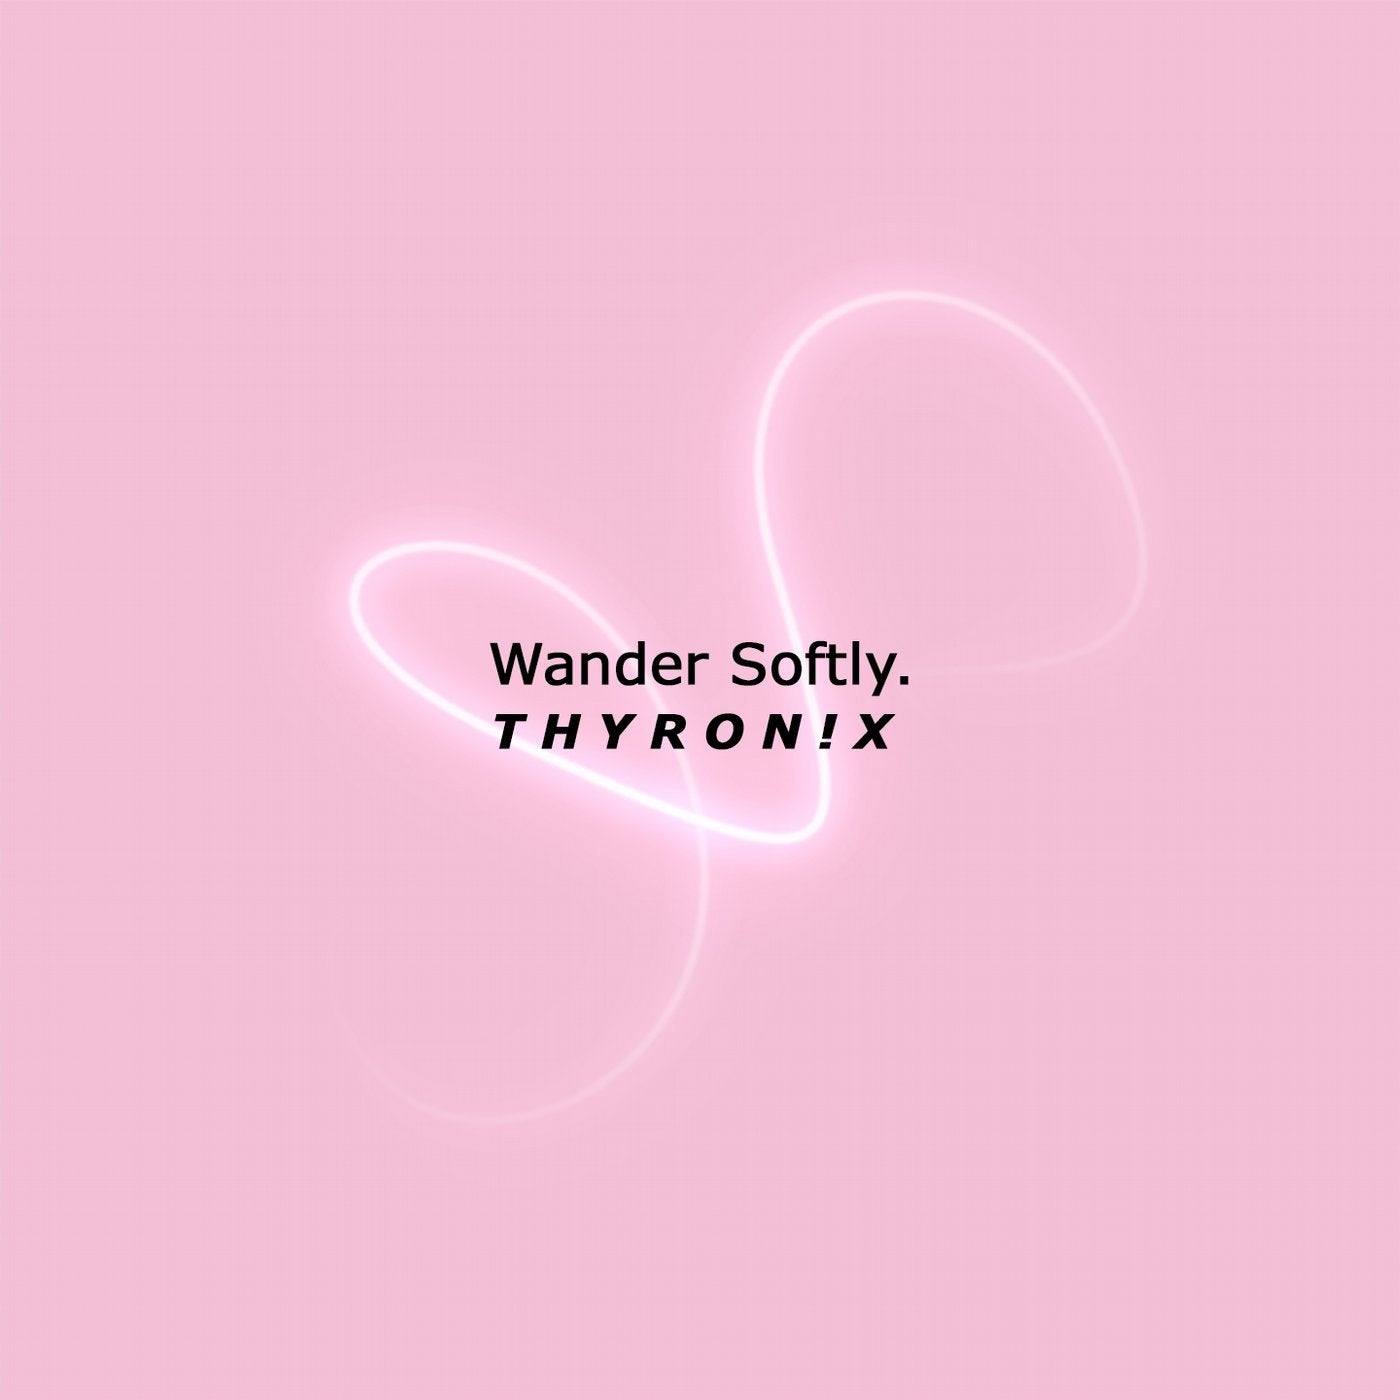 Wander Softly